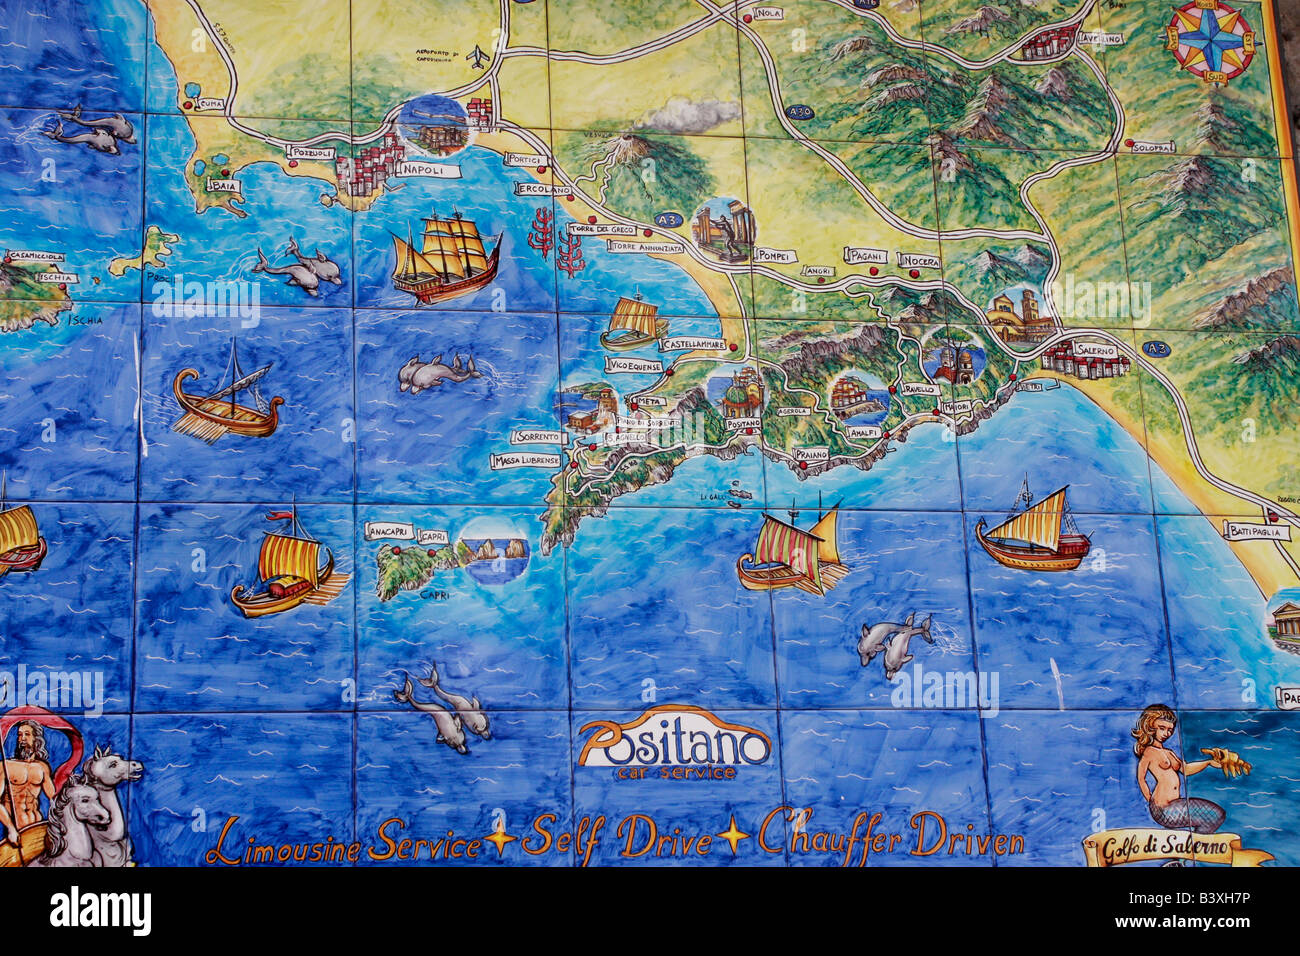 Les carreaux de céramique plan de Positano, Amalfi coast, Italie Banque D'Images